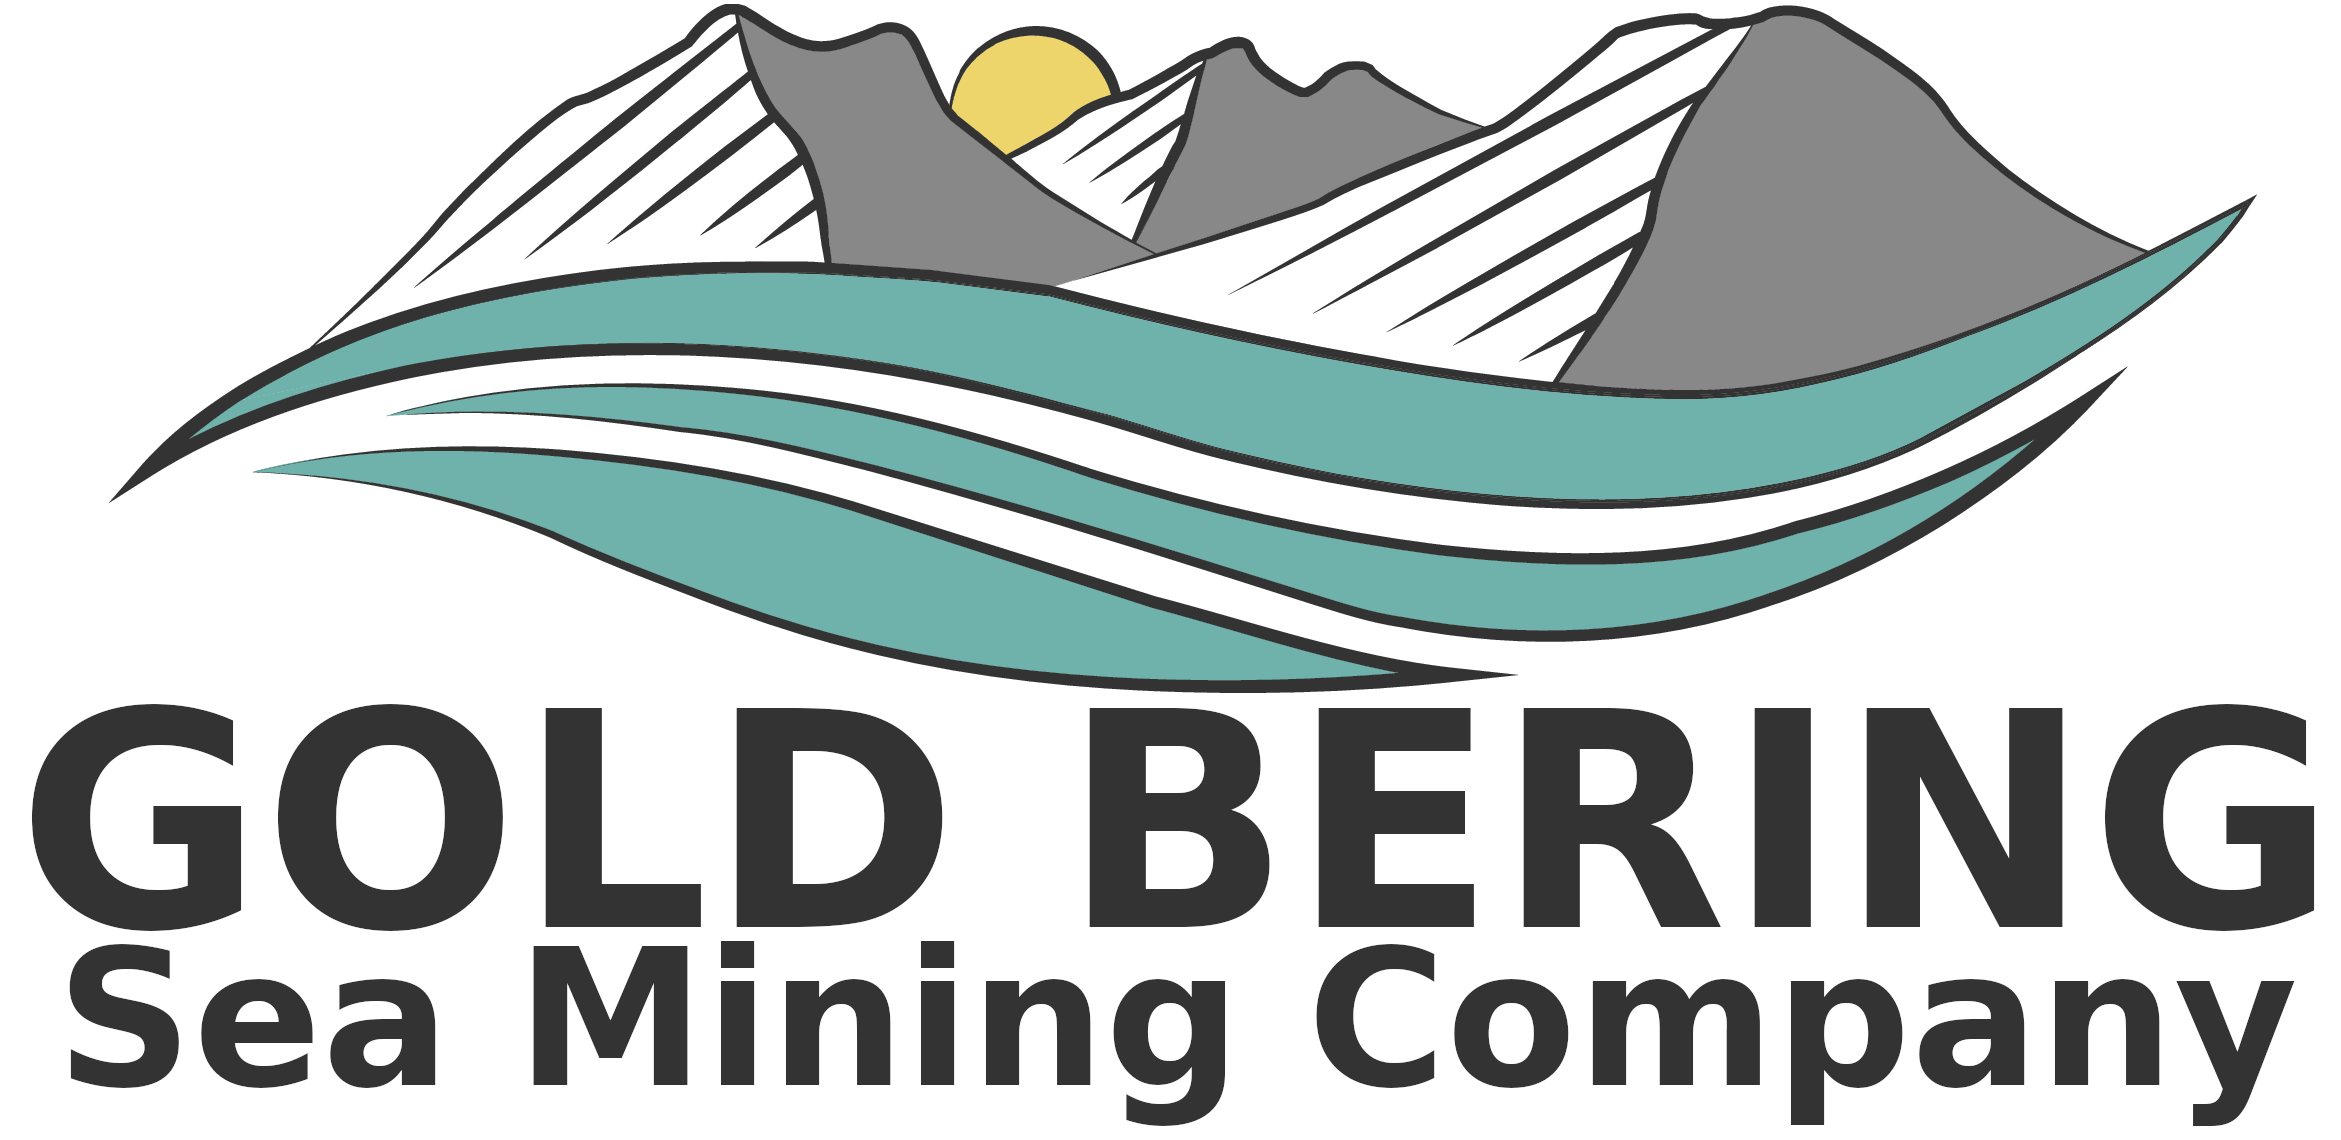 Gold Bering Sea Mining Company